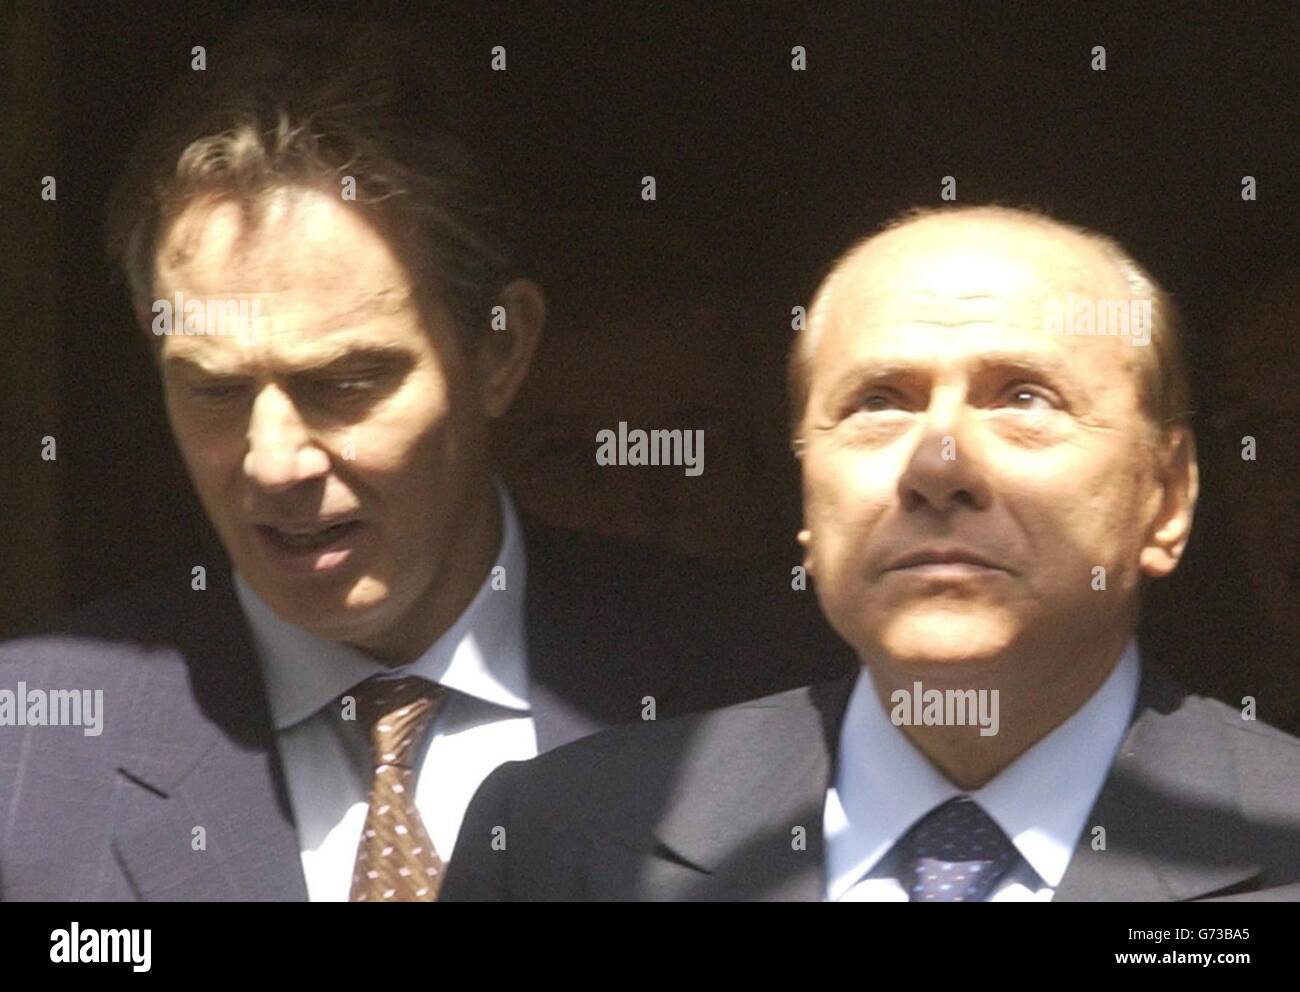 Tony Blair & Silvio Berlusconi Stock Photo - Alamy